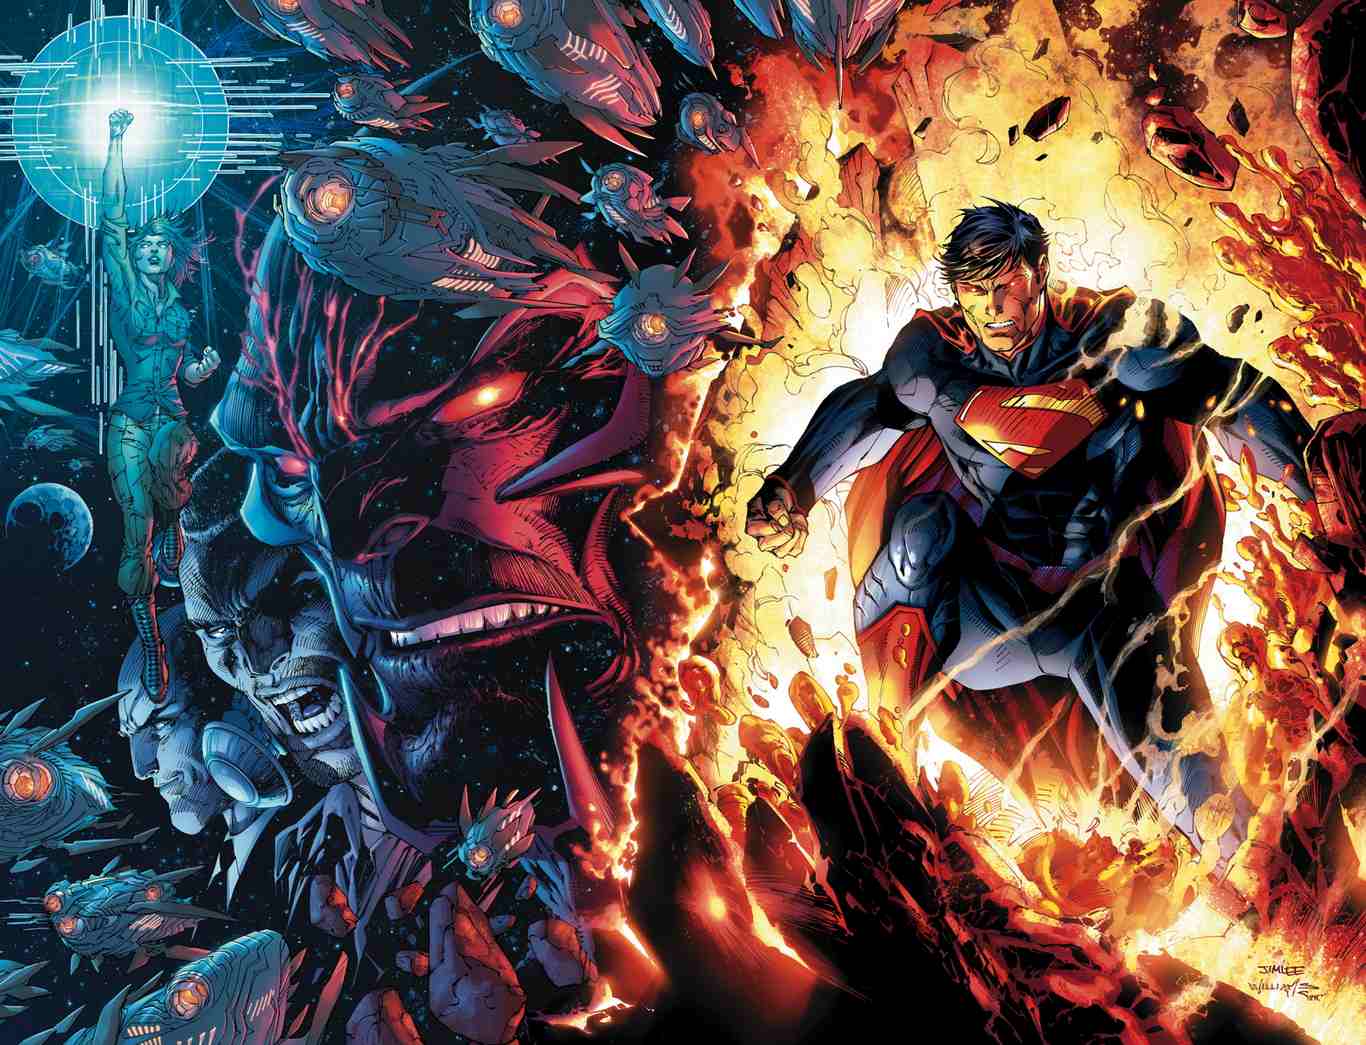 Hãy để hình ảnh siêu anh hùng mạnh mẽ, can đảm và tuyệt vời của Superman trong Liên Quân Mobile làm say đắm bạn. Bức ảnh này được thiết kế với tình yêu và sự tôn trọng đối với siêu anh hùng này, hứa hẹn sẽ đem đến cho bạn một phút giây tuyệt vời.